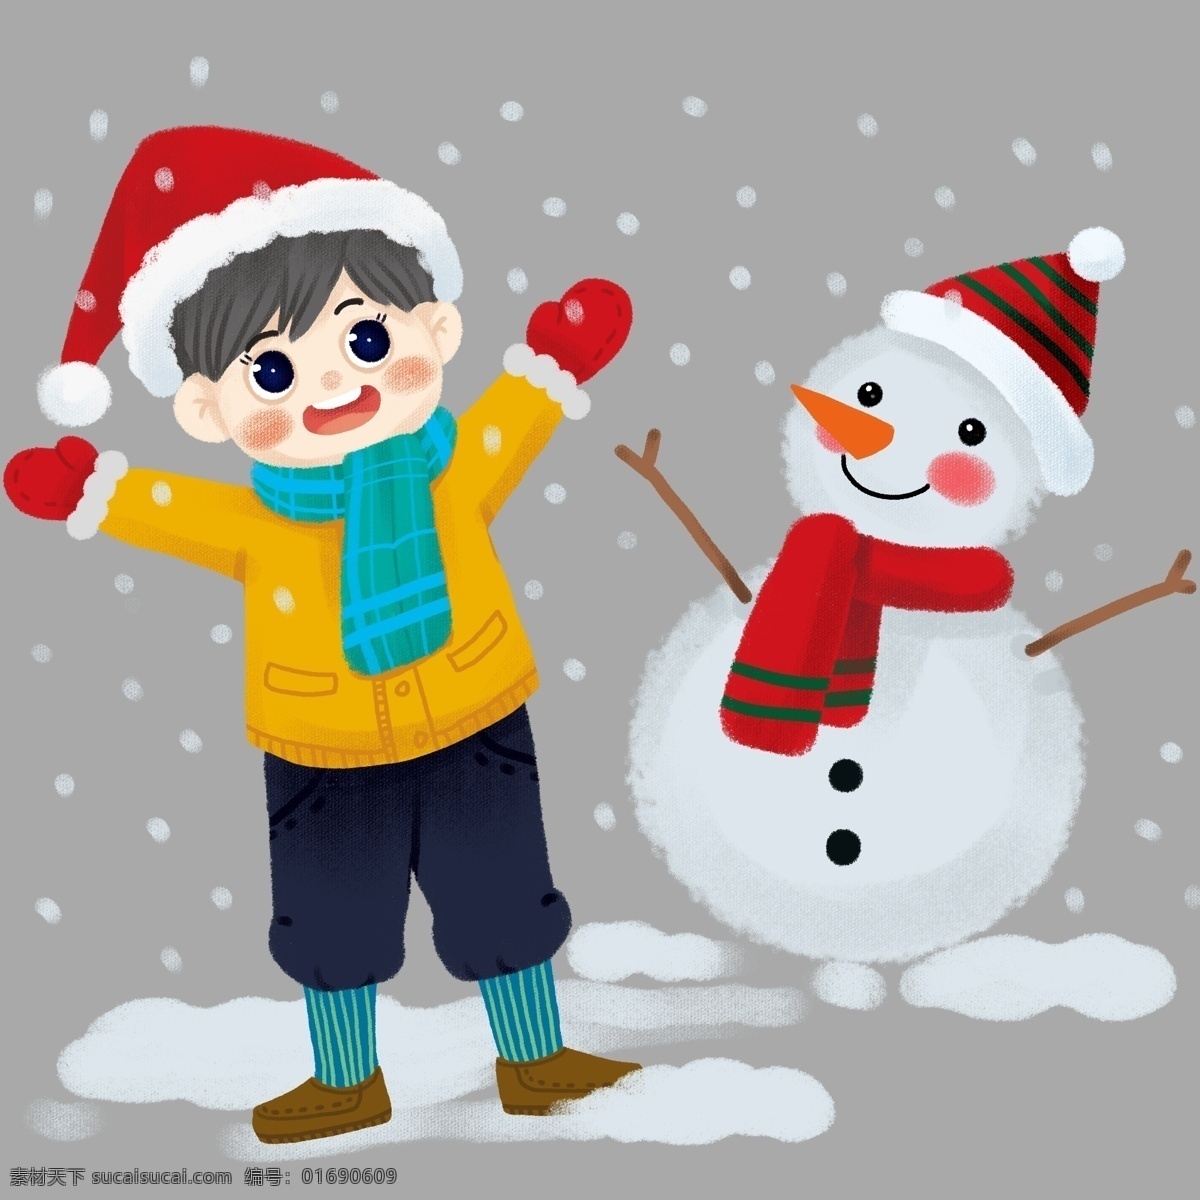 圣诞节 喜欢 下雪天 雪人 小 男孩 圣诞 节日 男孩女孩系列 礼物 传统习俗 可爱 卡通风 童话风格 边框 插画 壁纸 装饰画